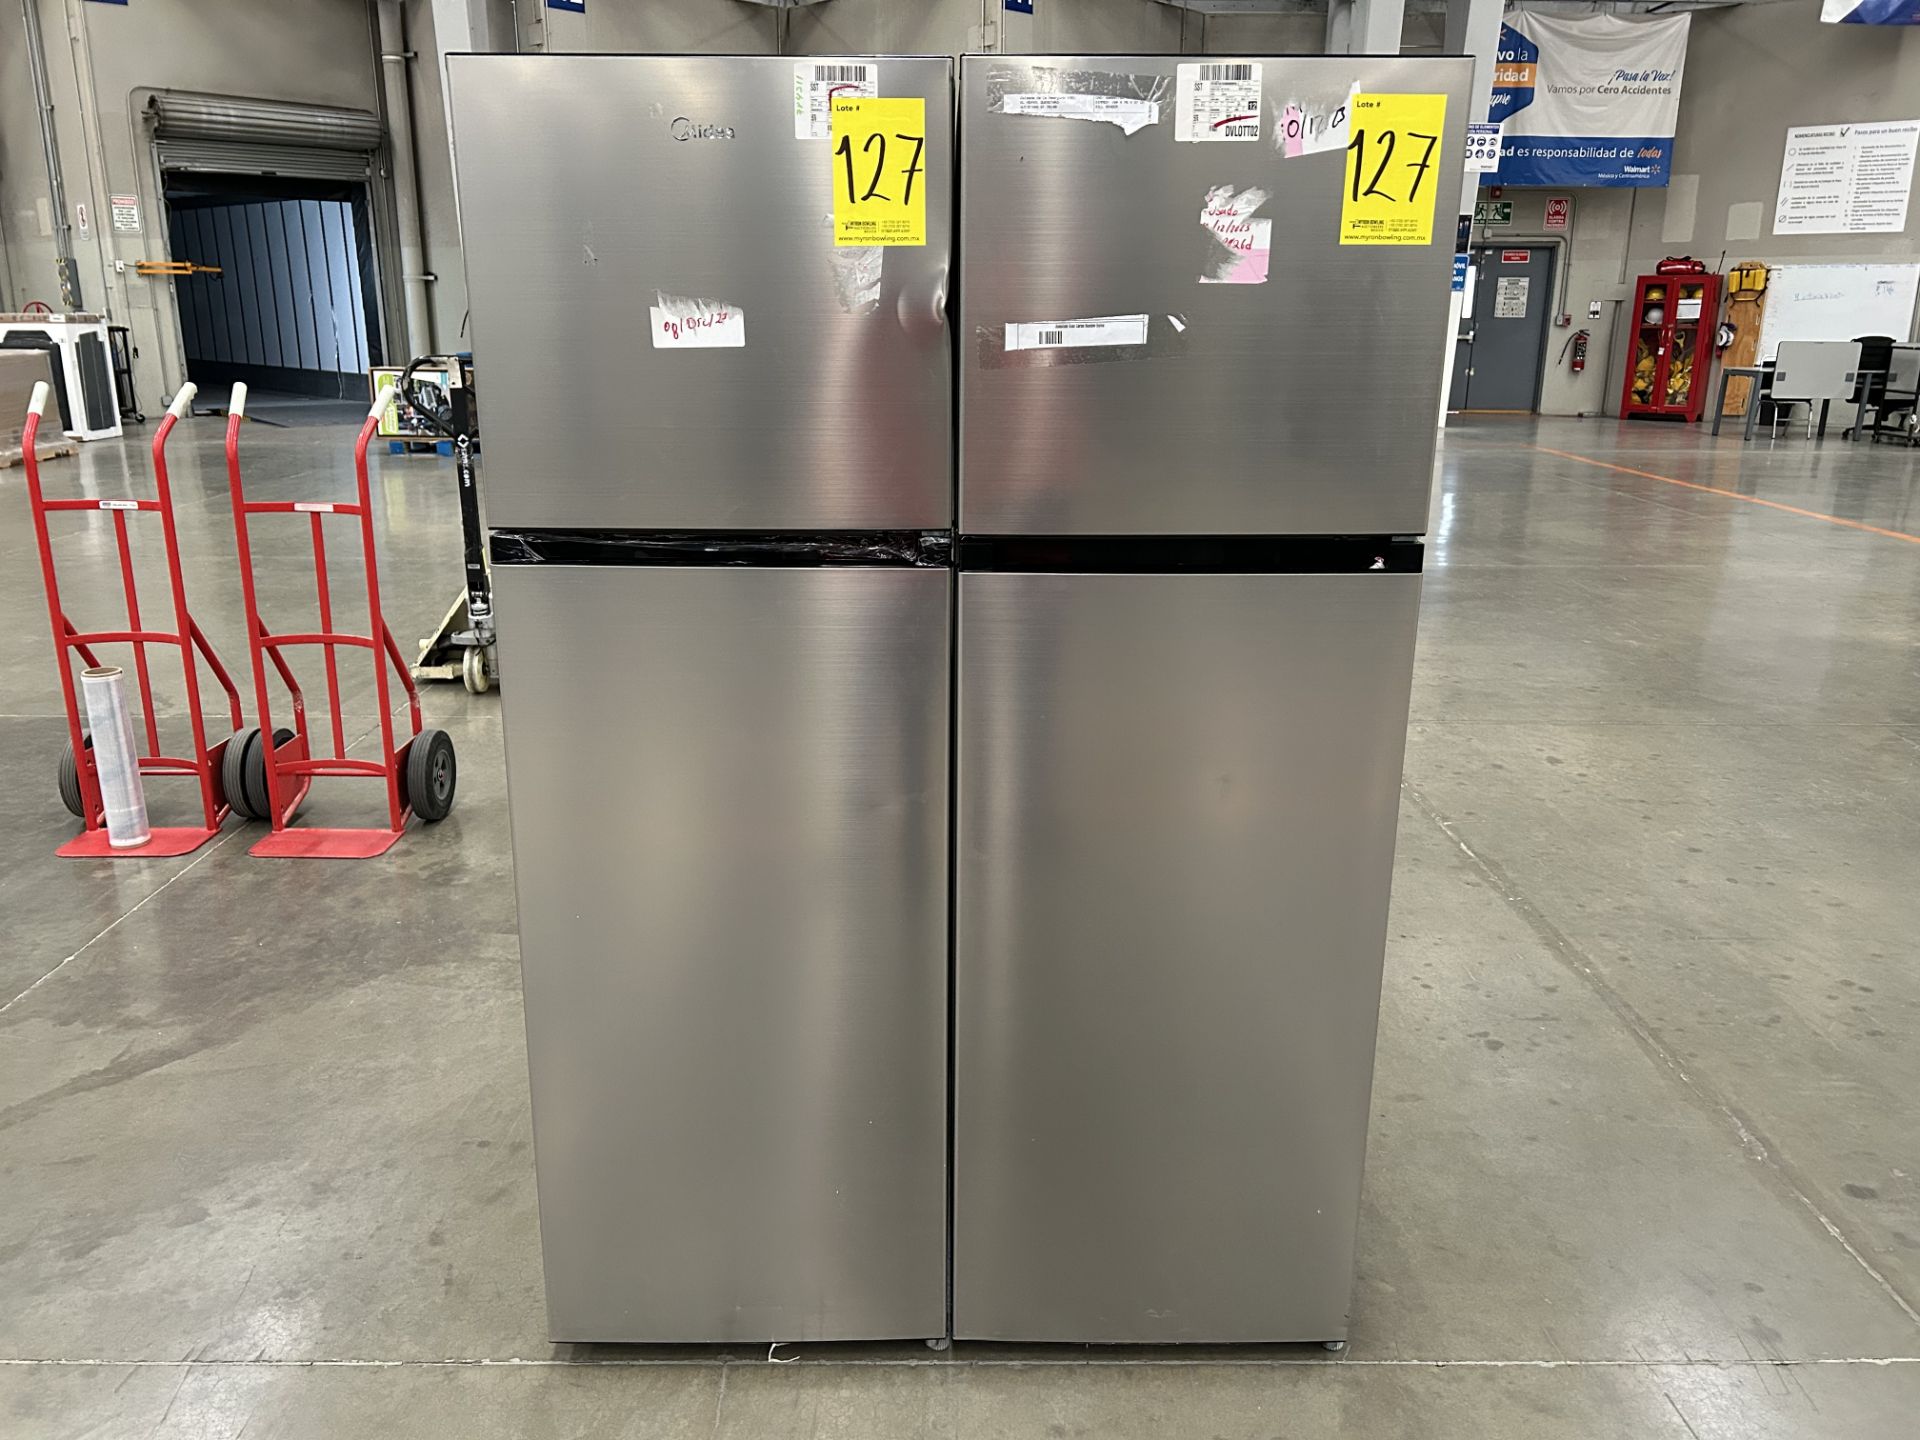 Lote de 2 refrigeradores contiene: 1 refrigerador Marca MIDEA, Modelo MDRT280WINDX, Serie 11872, Co